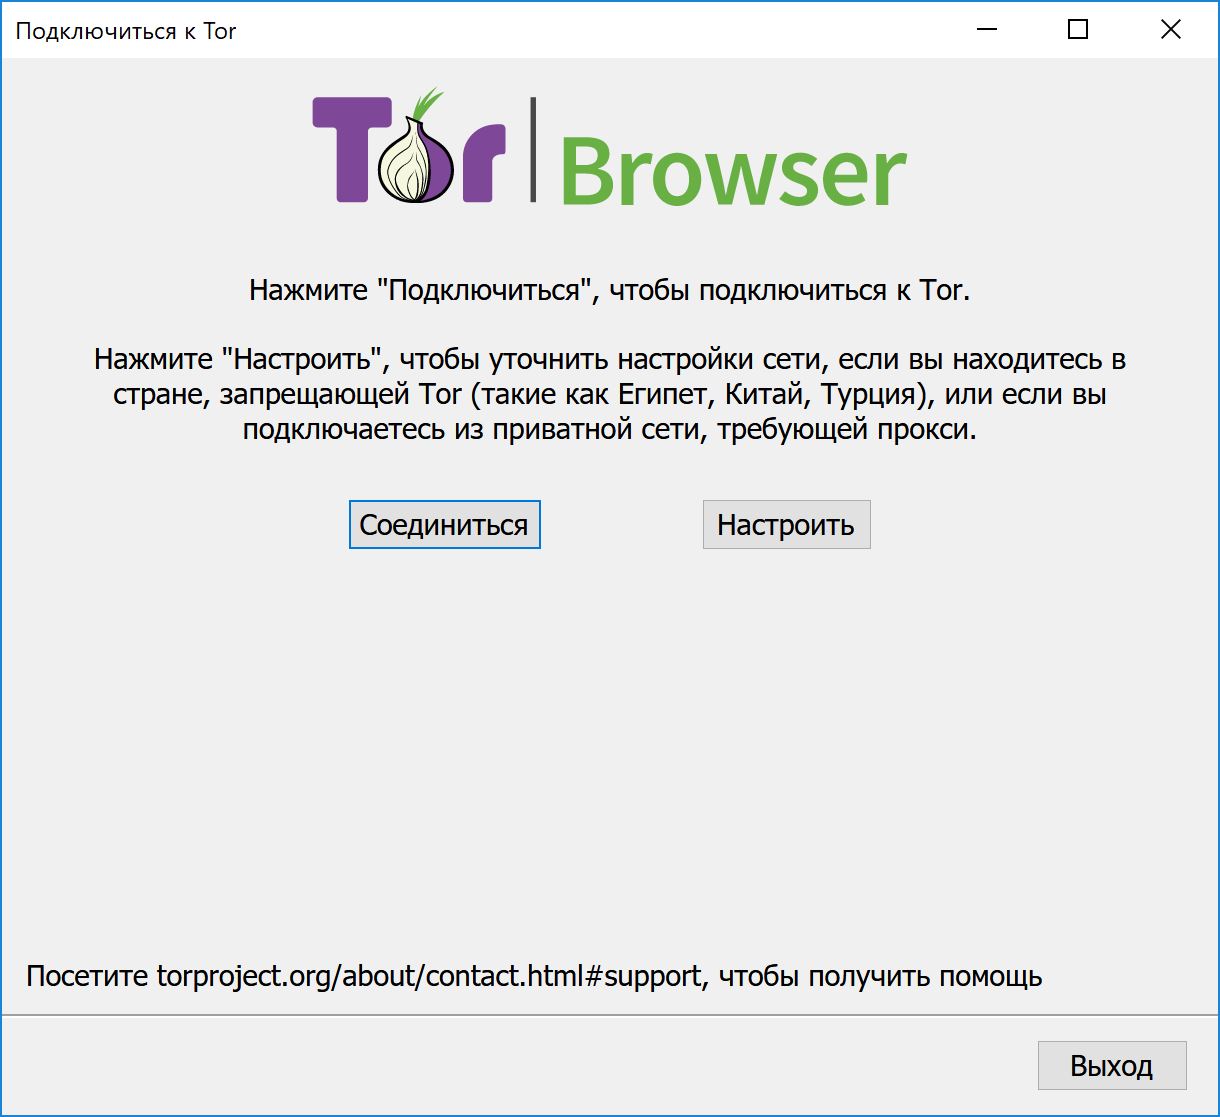 Tor browser для начинающих hydra2web 10 лет употреблял марихуану